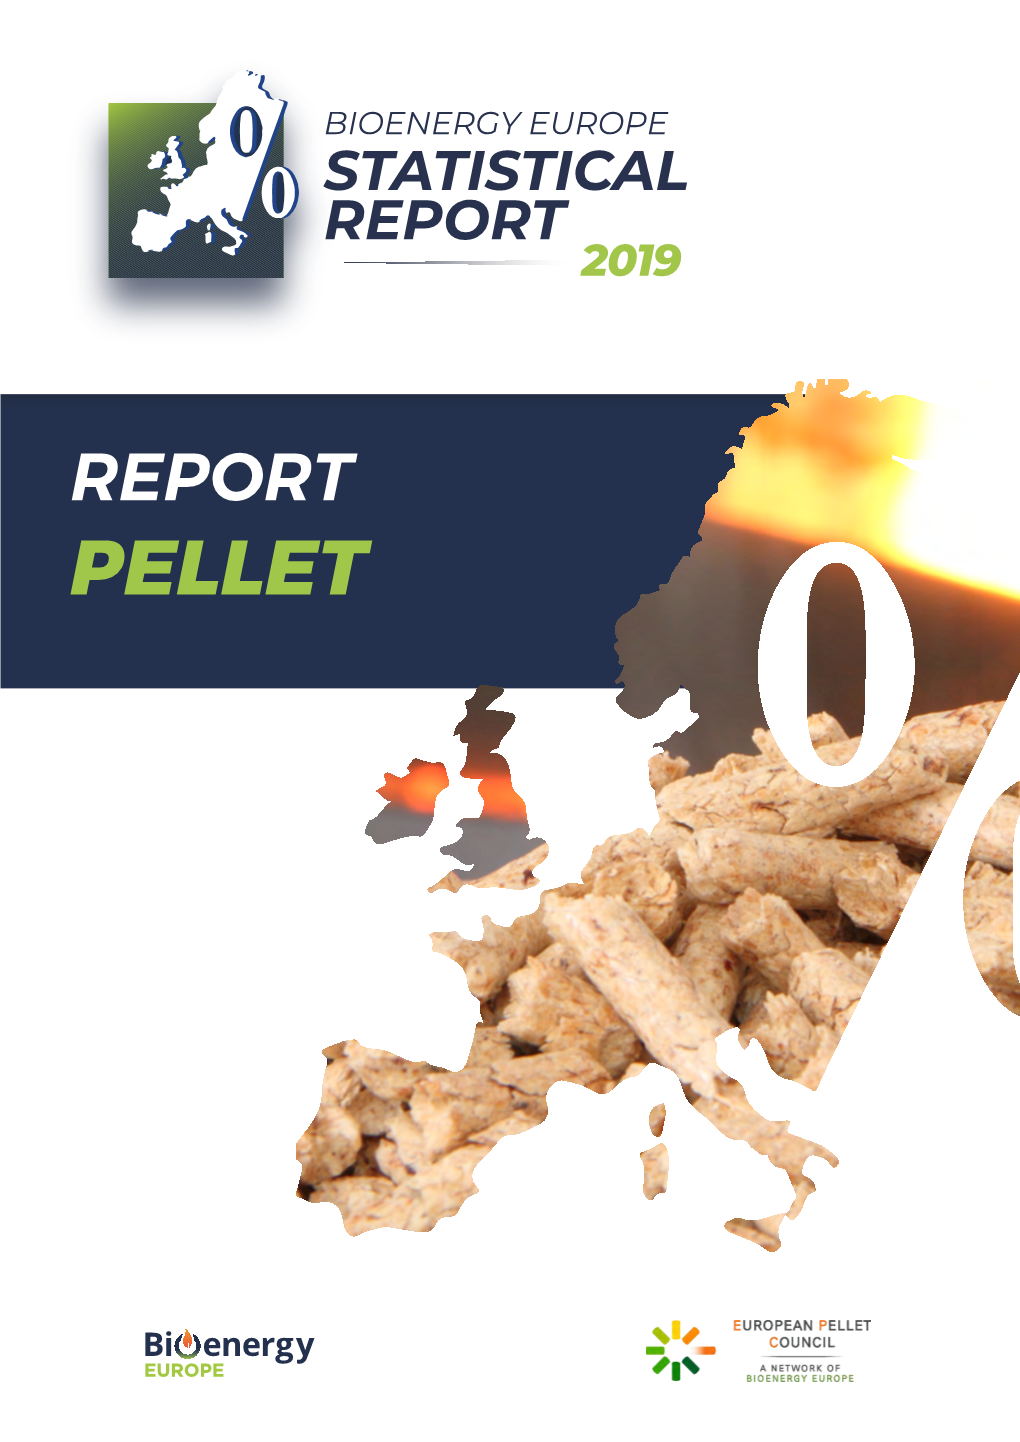 Download the Pellet Report 2019